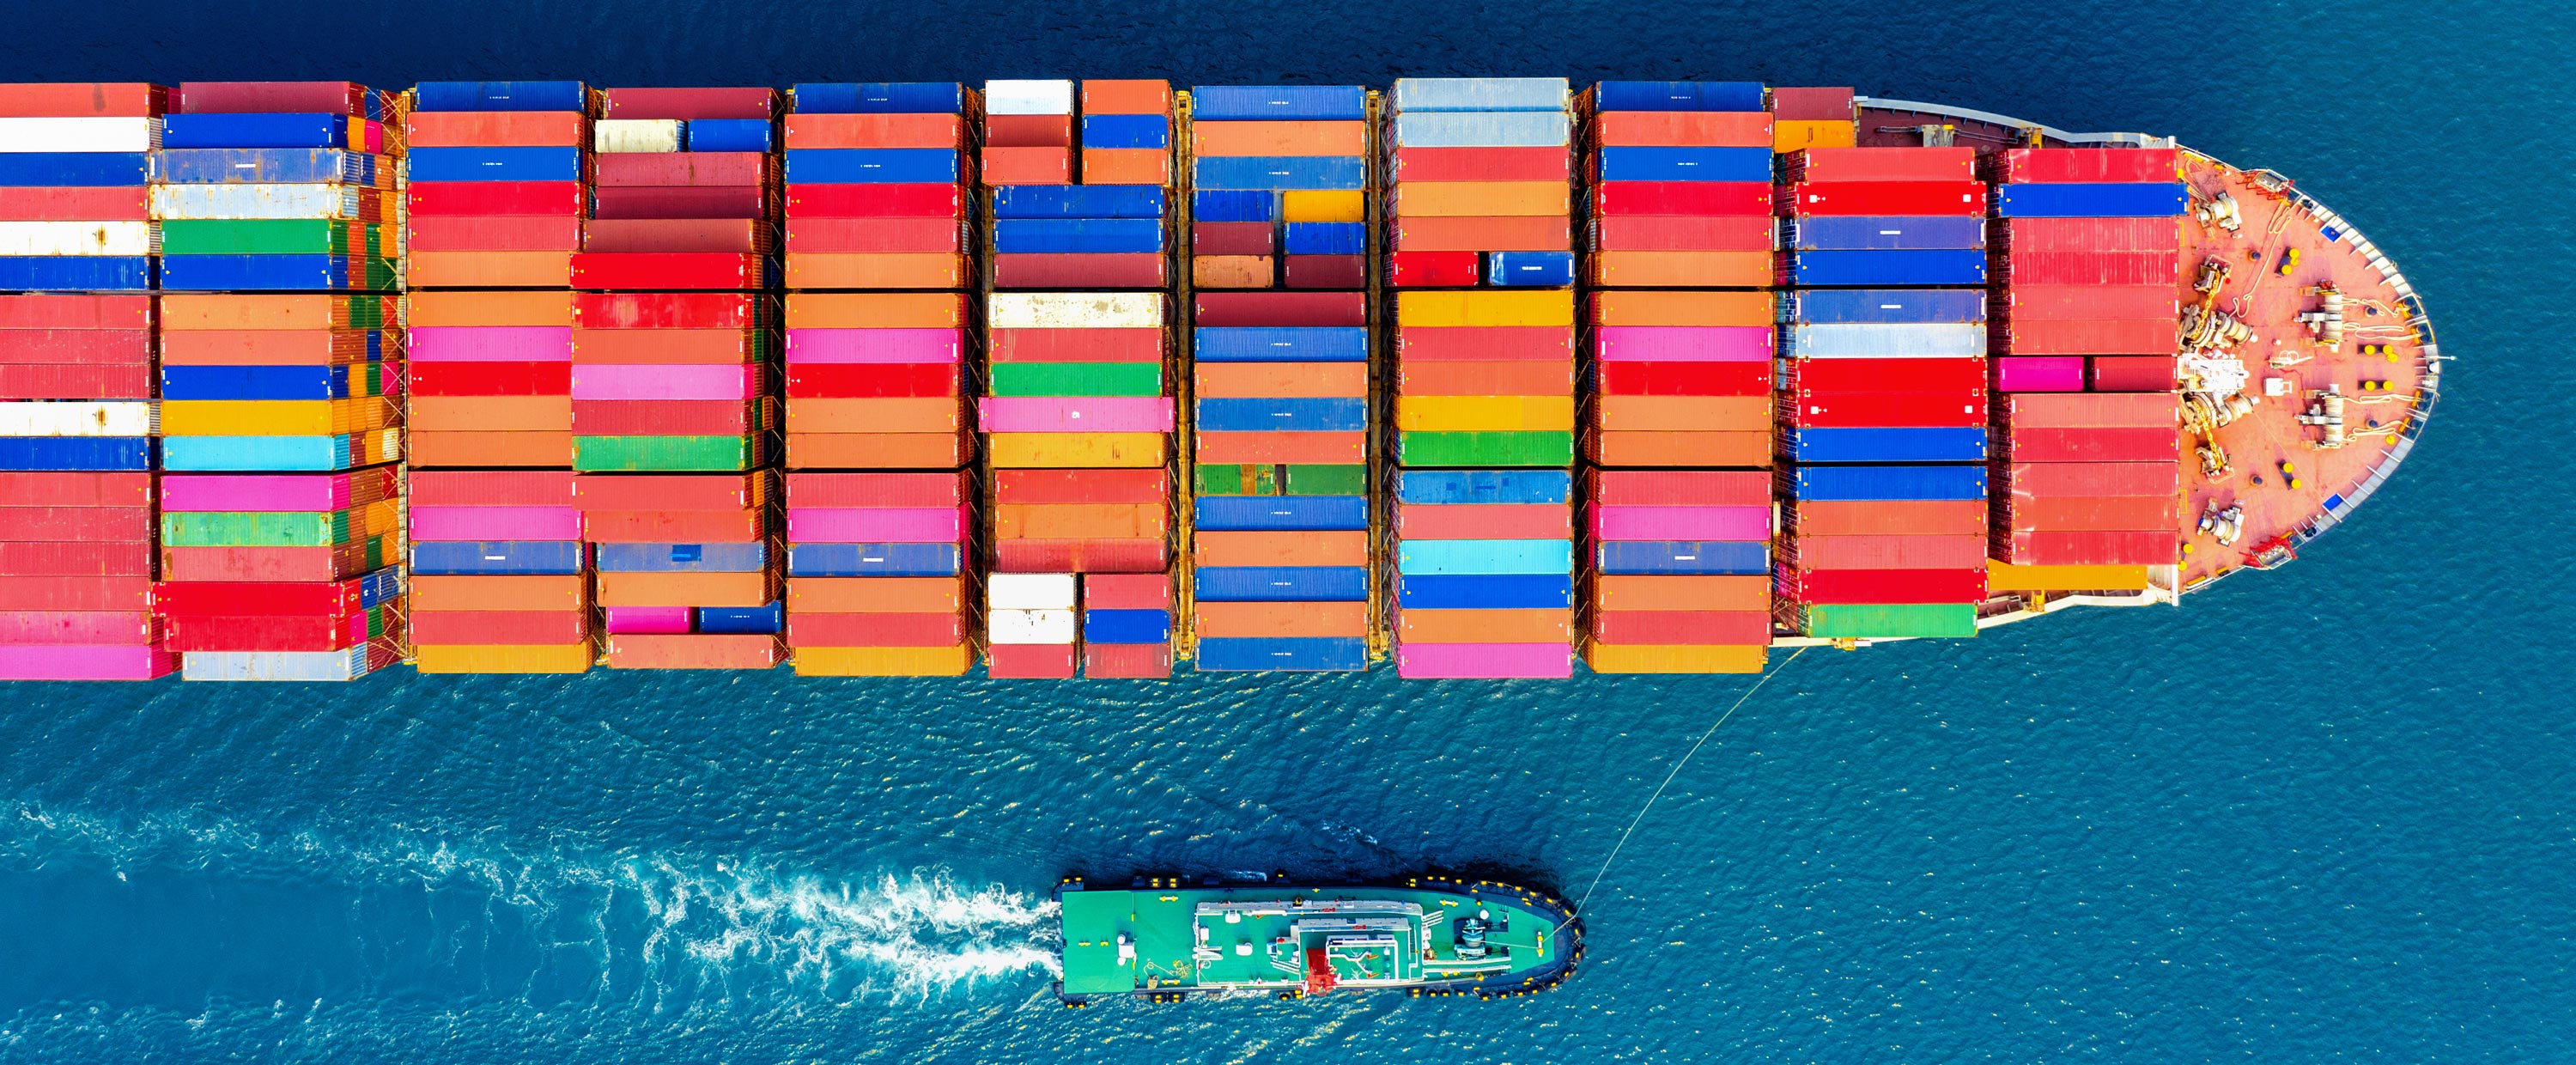 Riesiges Containerschiff im azurblauen Ozean befüllt mit Handelswaren aus aller Welt für B2B. Bunte Container transportieren Waren wie Medizinische Produkte und Geräte, Rohkaffe, Rohkakao, weitere Agrarprodukte. Am Handelsschiff ist ein kleineres Schiff.